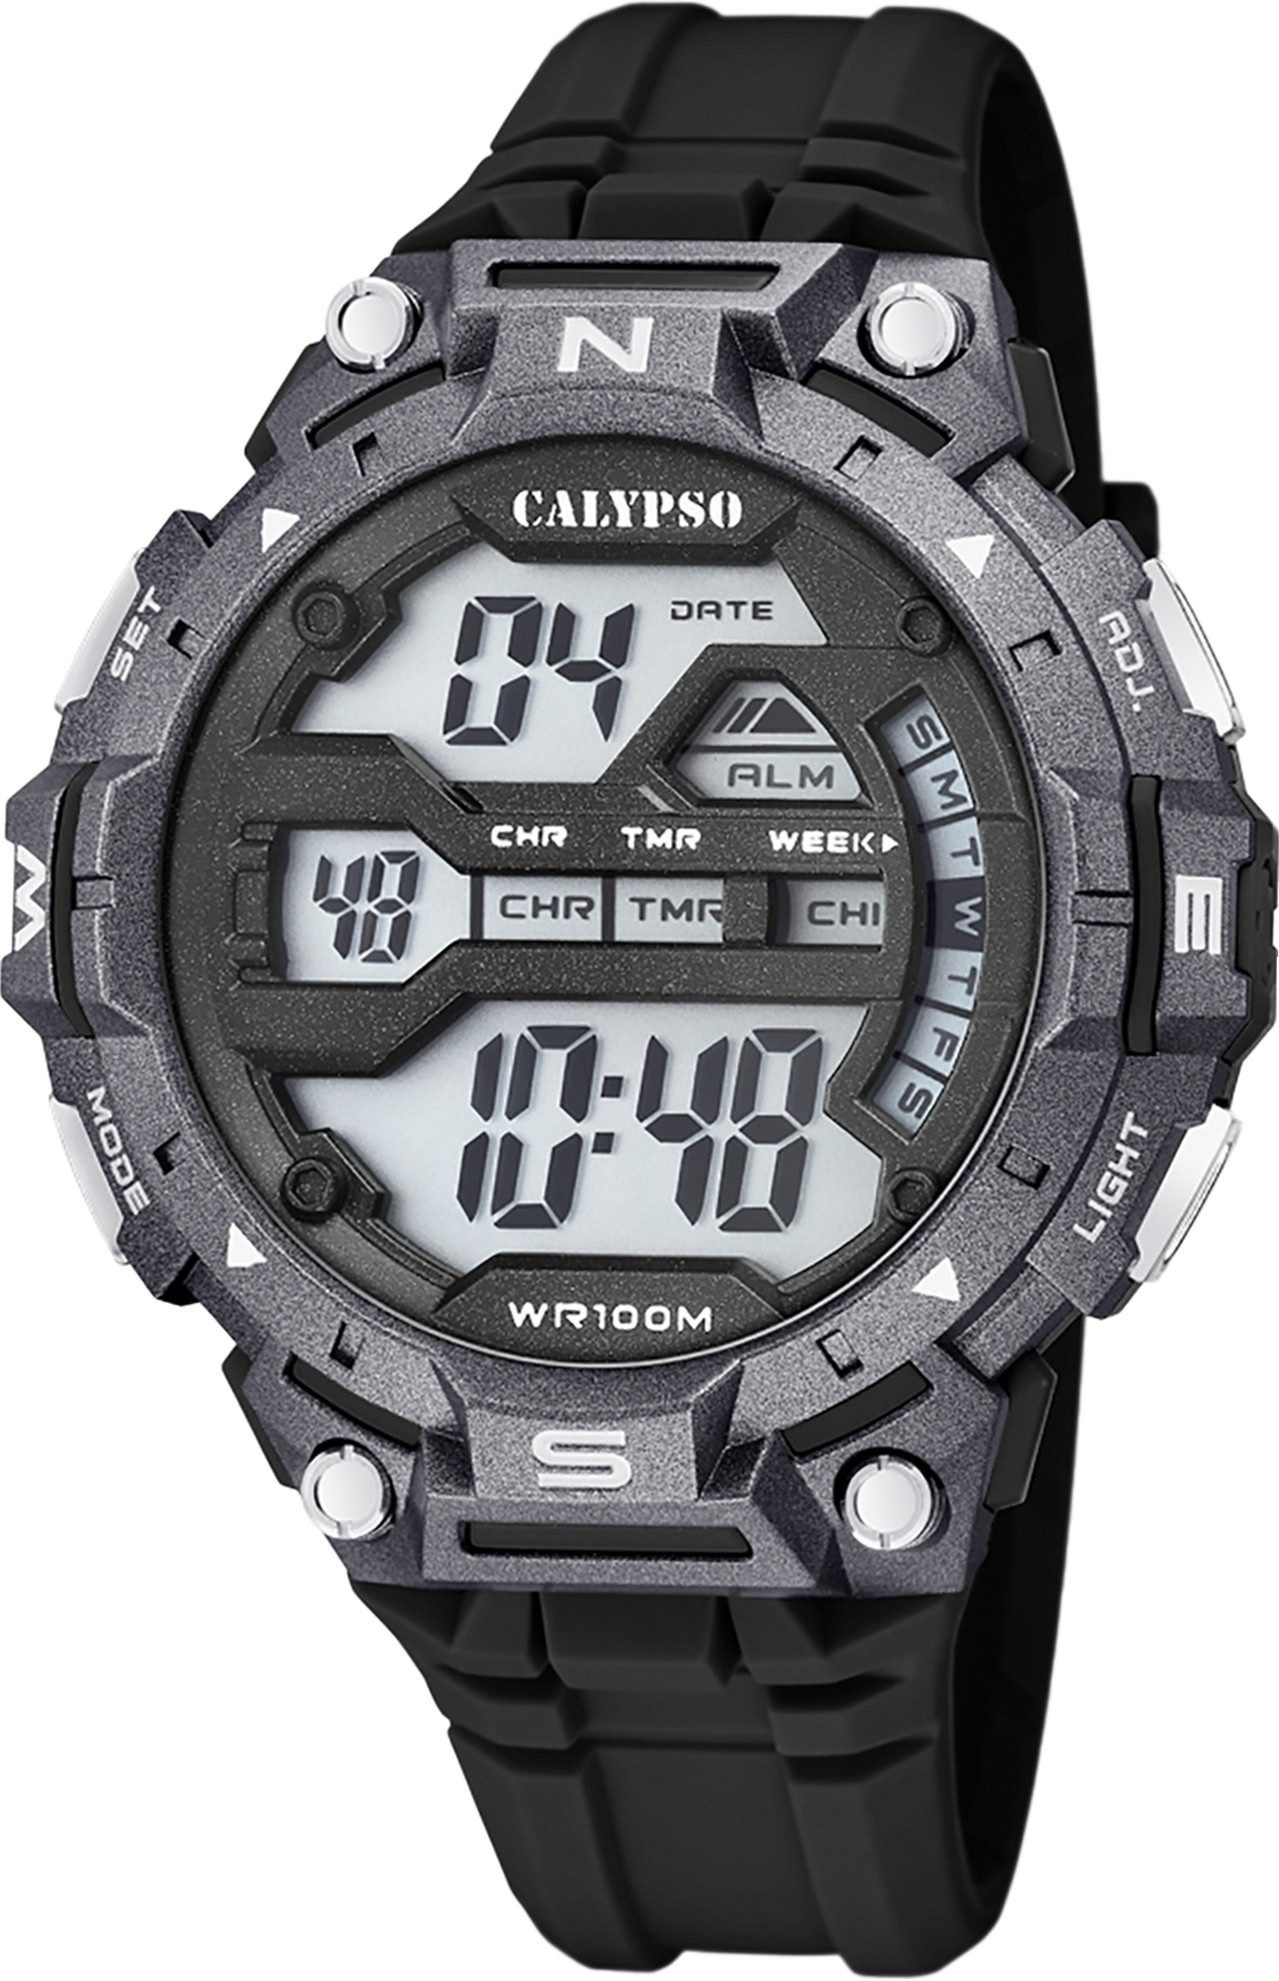 CALYPSO WATCHES Digitaluhr Calypso Herrenuhr Kunststoff schwarz, (Digitaluhr), Herrenuhr rund, extra groß (ca. 51mm) Kunststoffarmband, Sport-Style